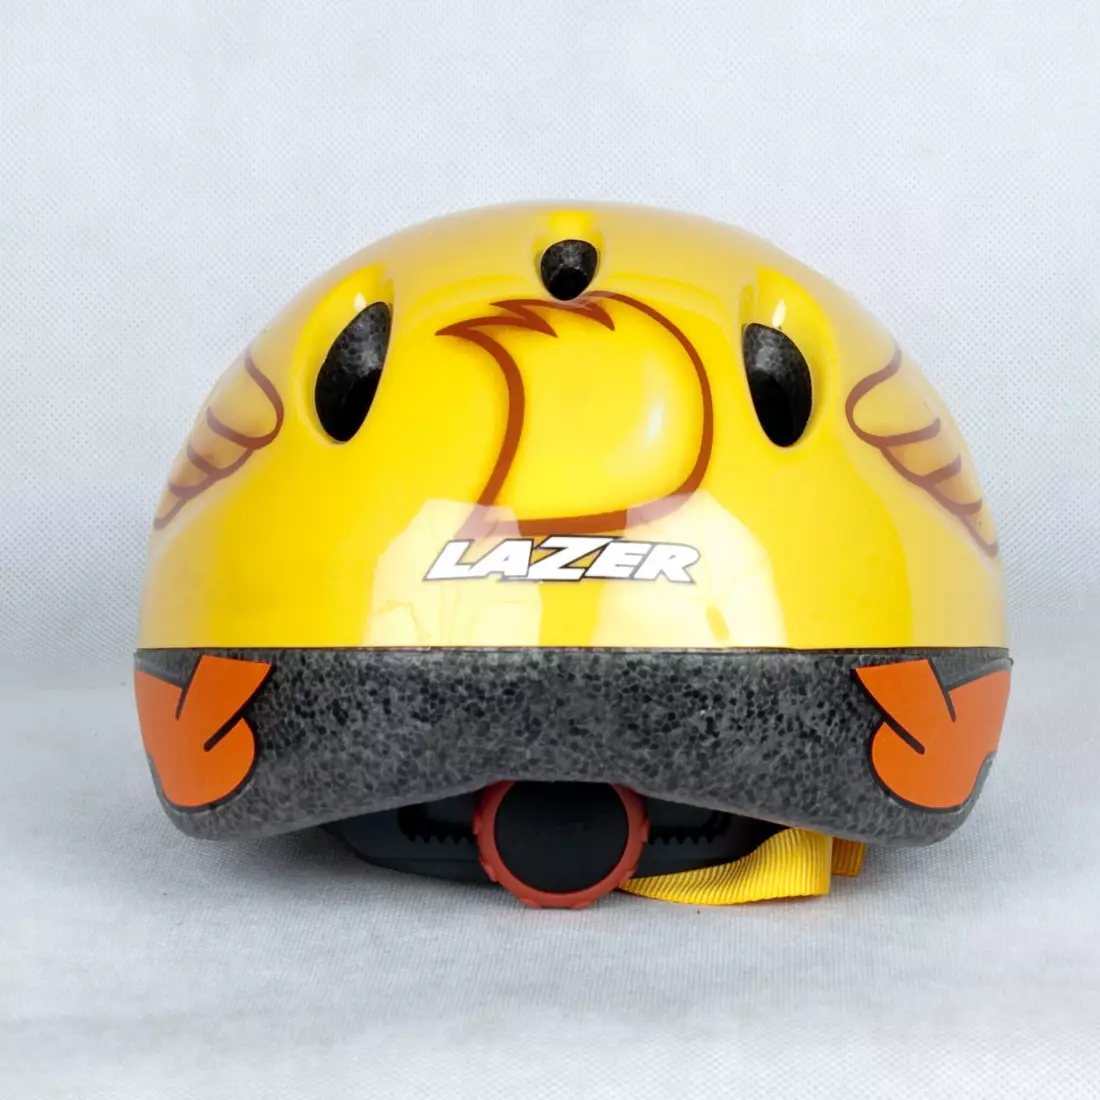 LAZER - LAZER MAX children's helmet - duck